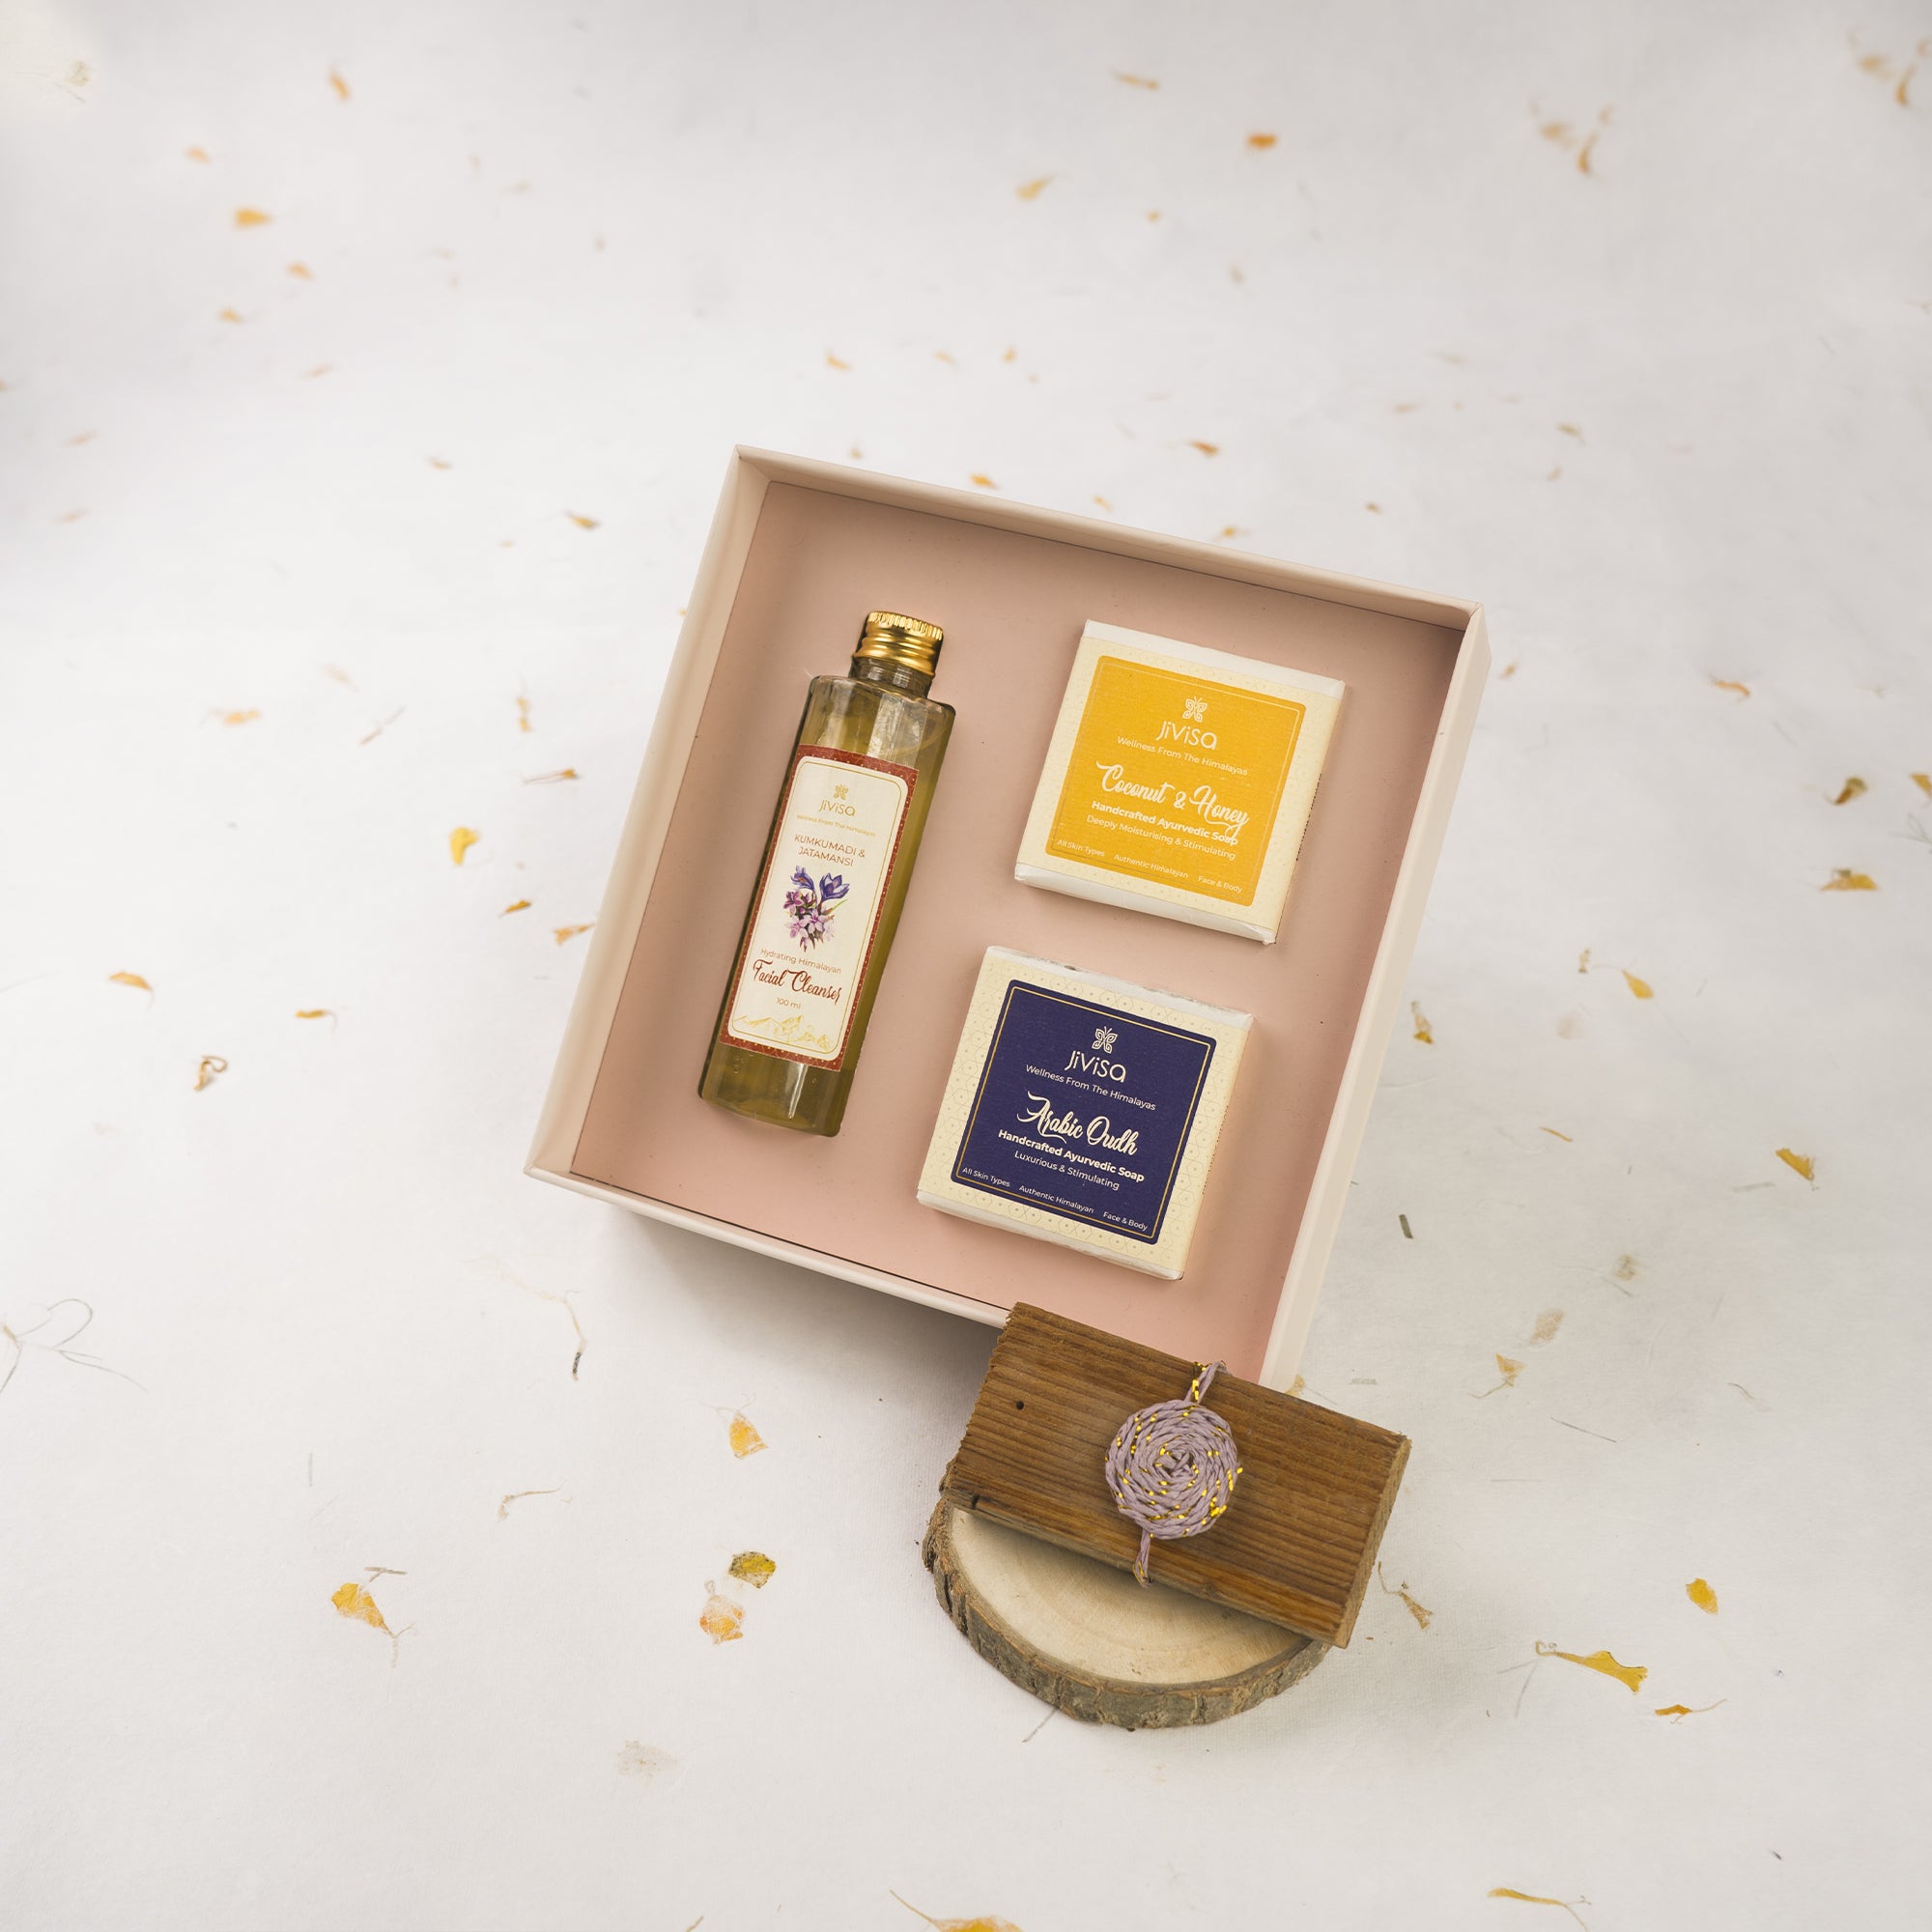 JiViSa Luxury Face and Body Care Gift Box (With Handmade Rakhi)